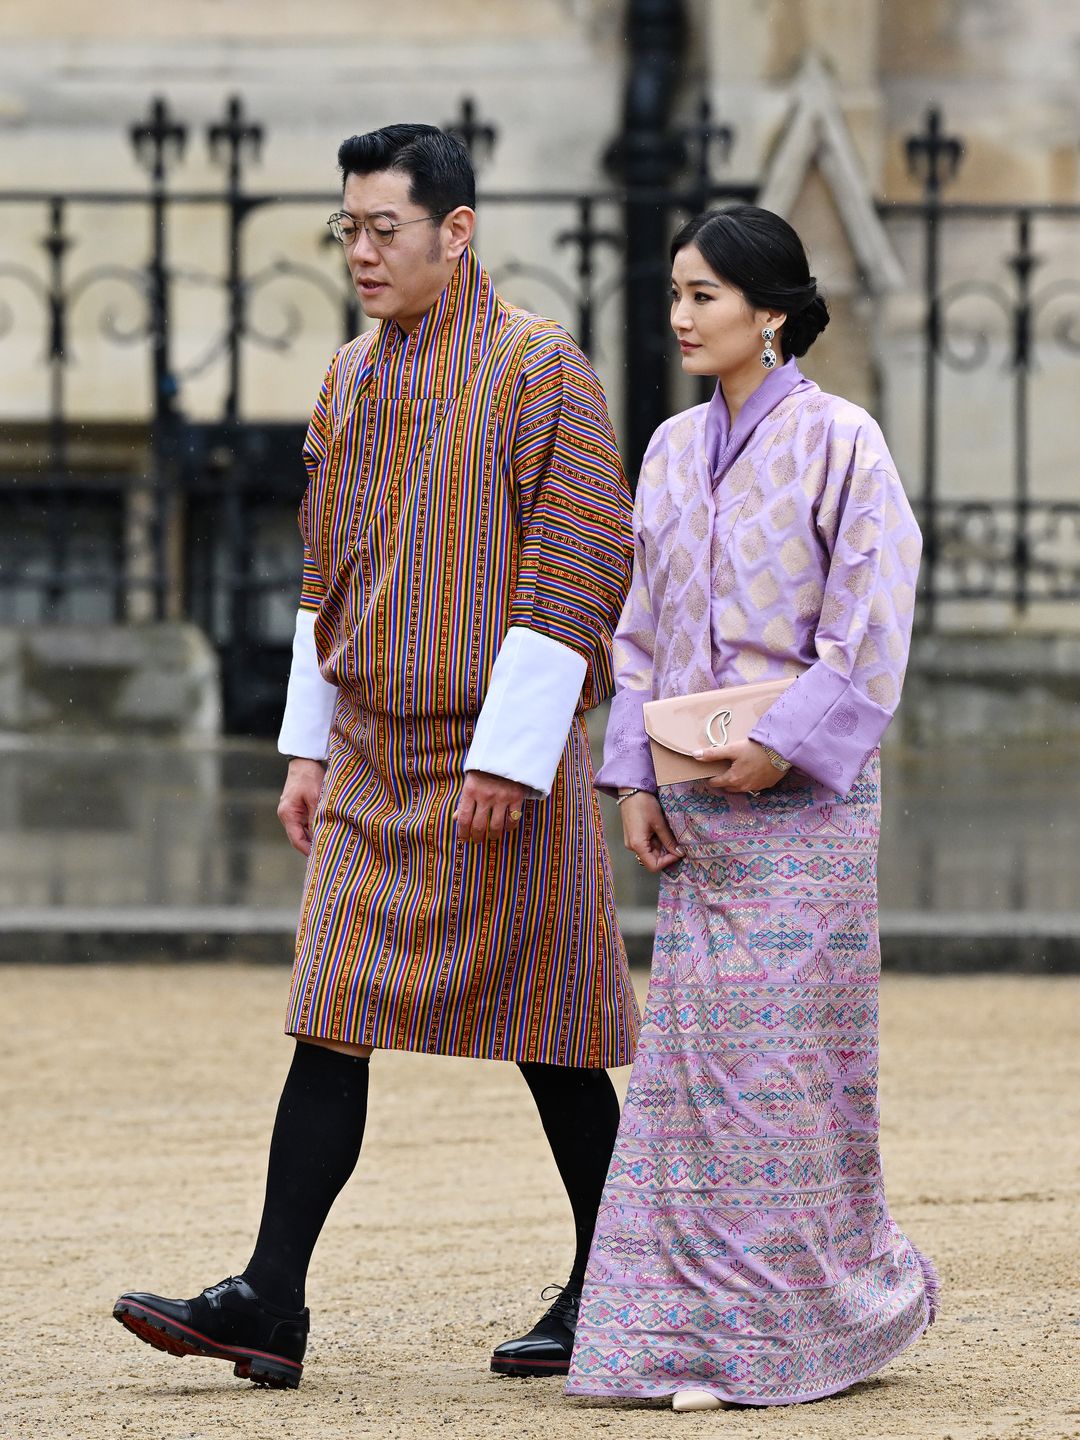 King Jigme Khesar Namgyel Wangchuck and Queen Jetsun Pema, of Bhutan 